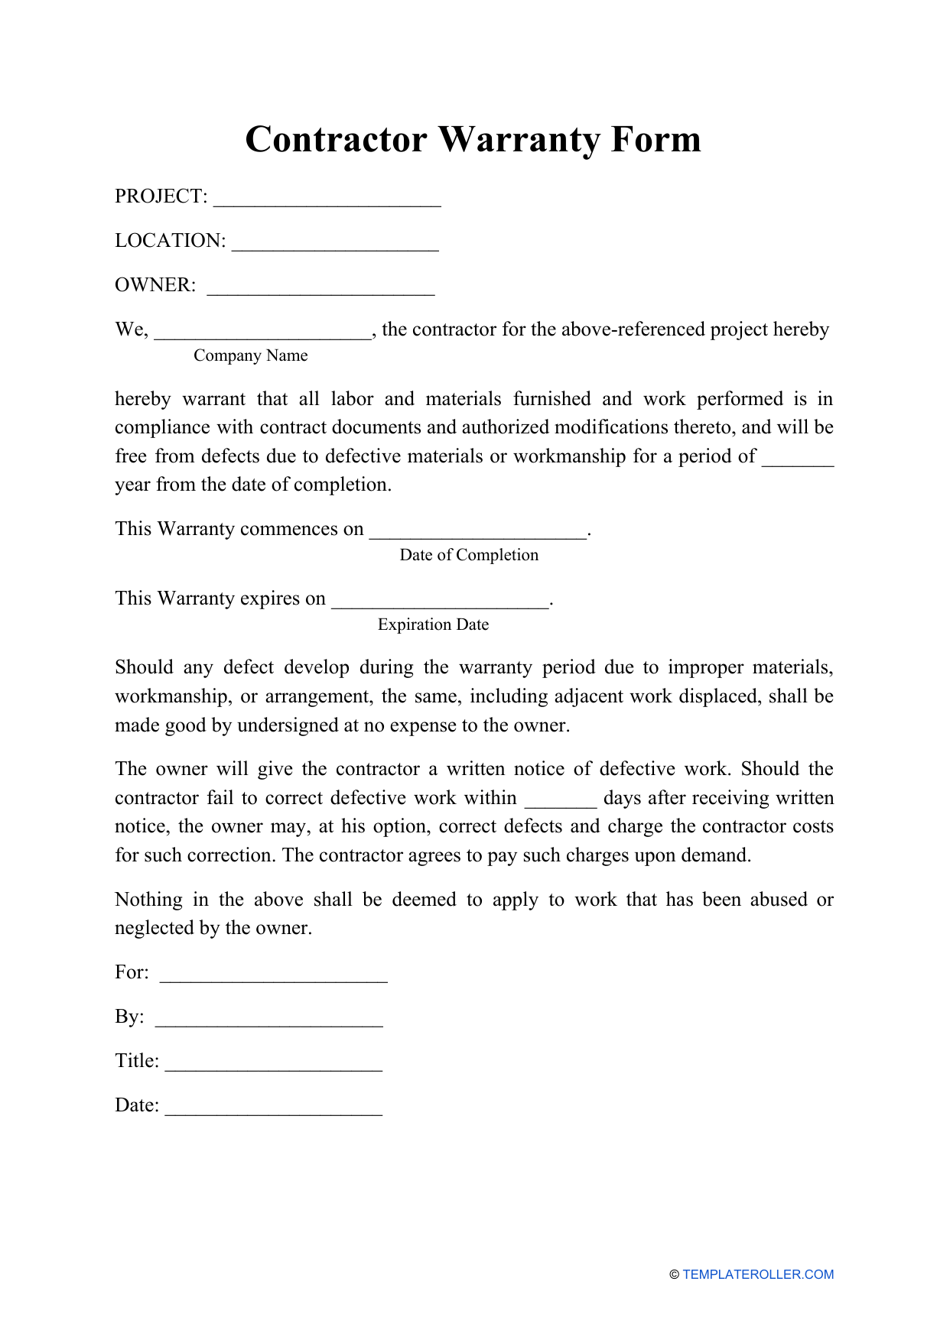 Contractor Warranty Form Download Printable PDF